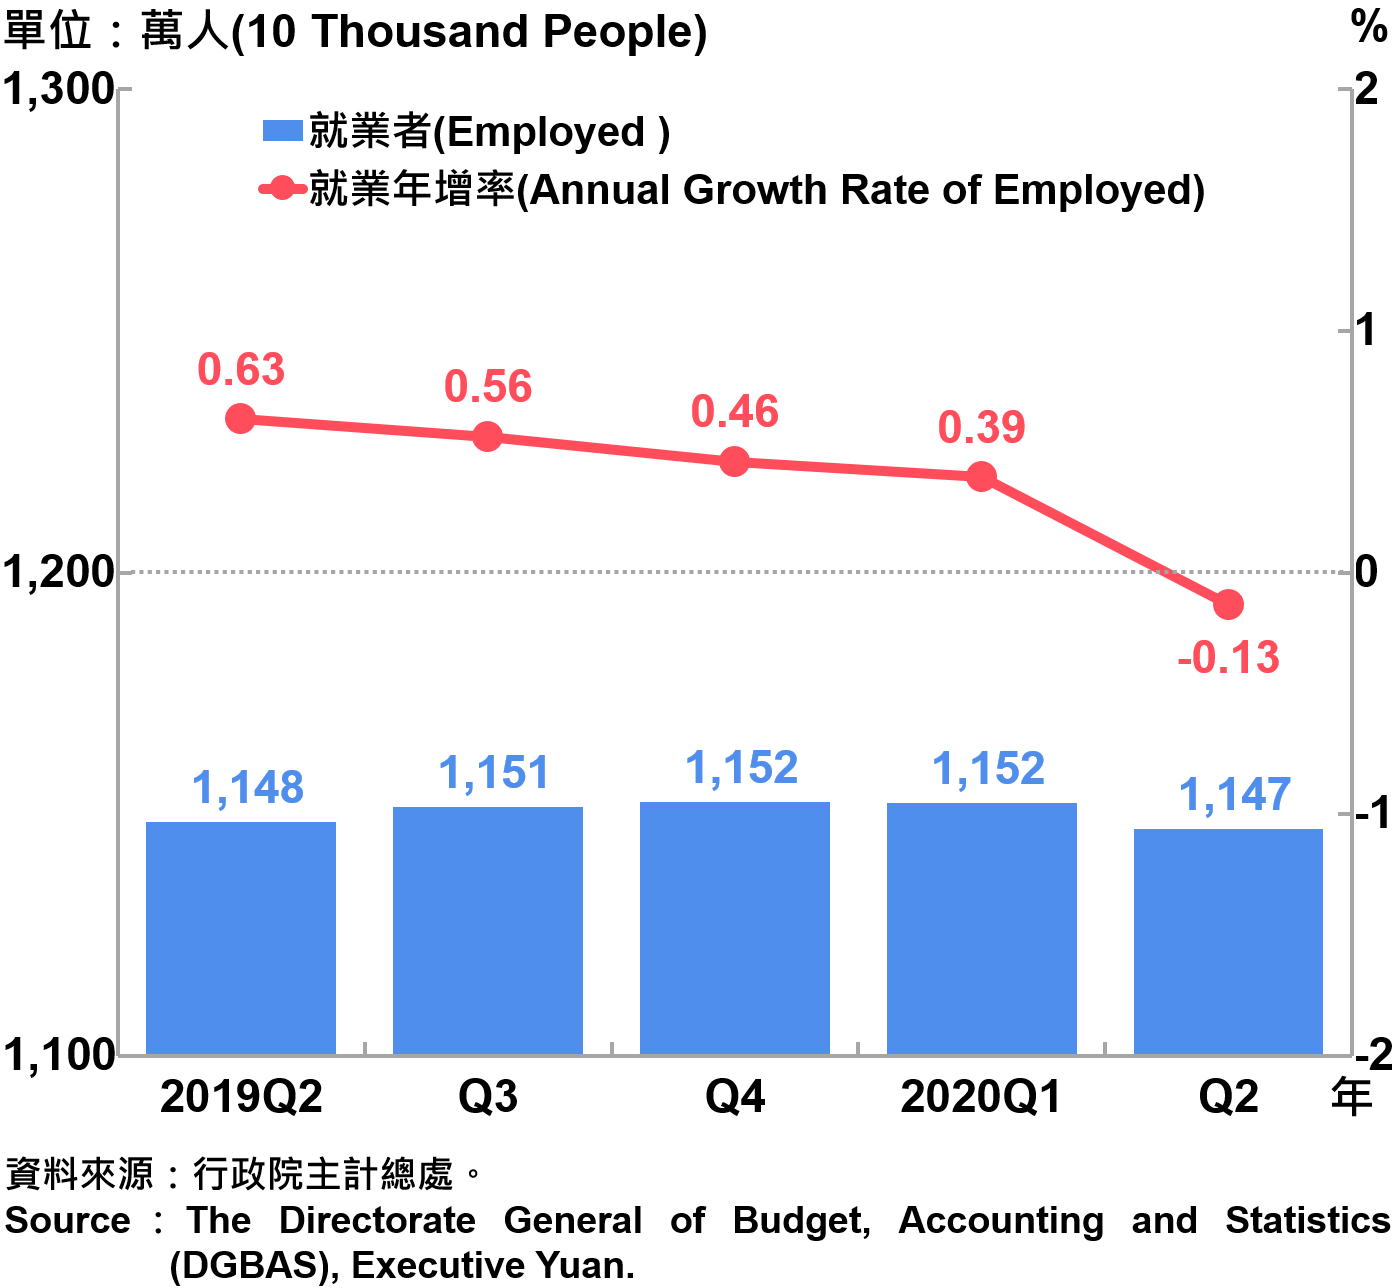 就業人數及就業成長率Employed and Annual Growth Rate of Employed